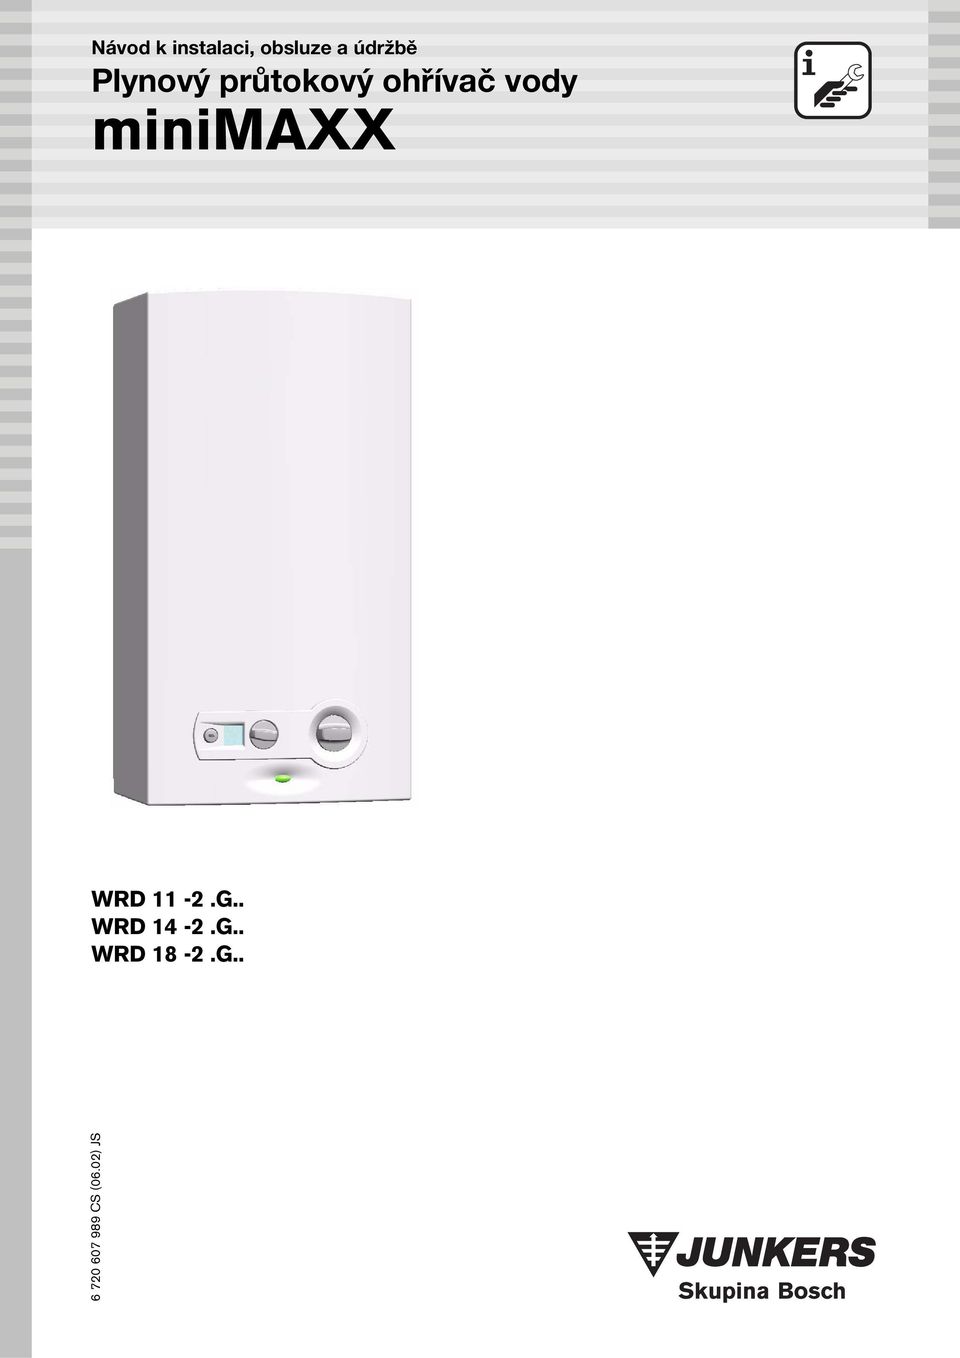 Plynový průtokový ohřívač vody minimaxx - PDF Free Download